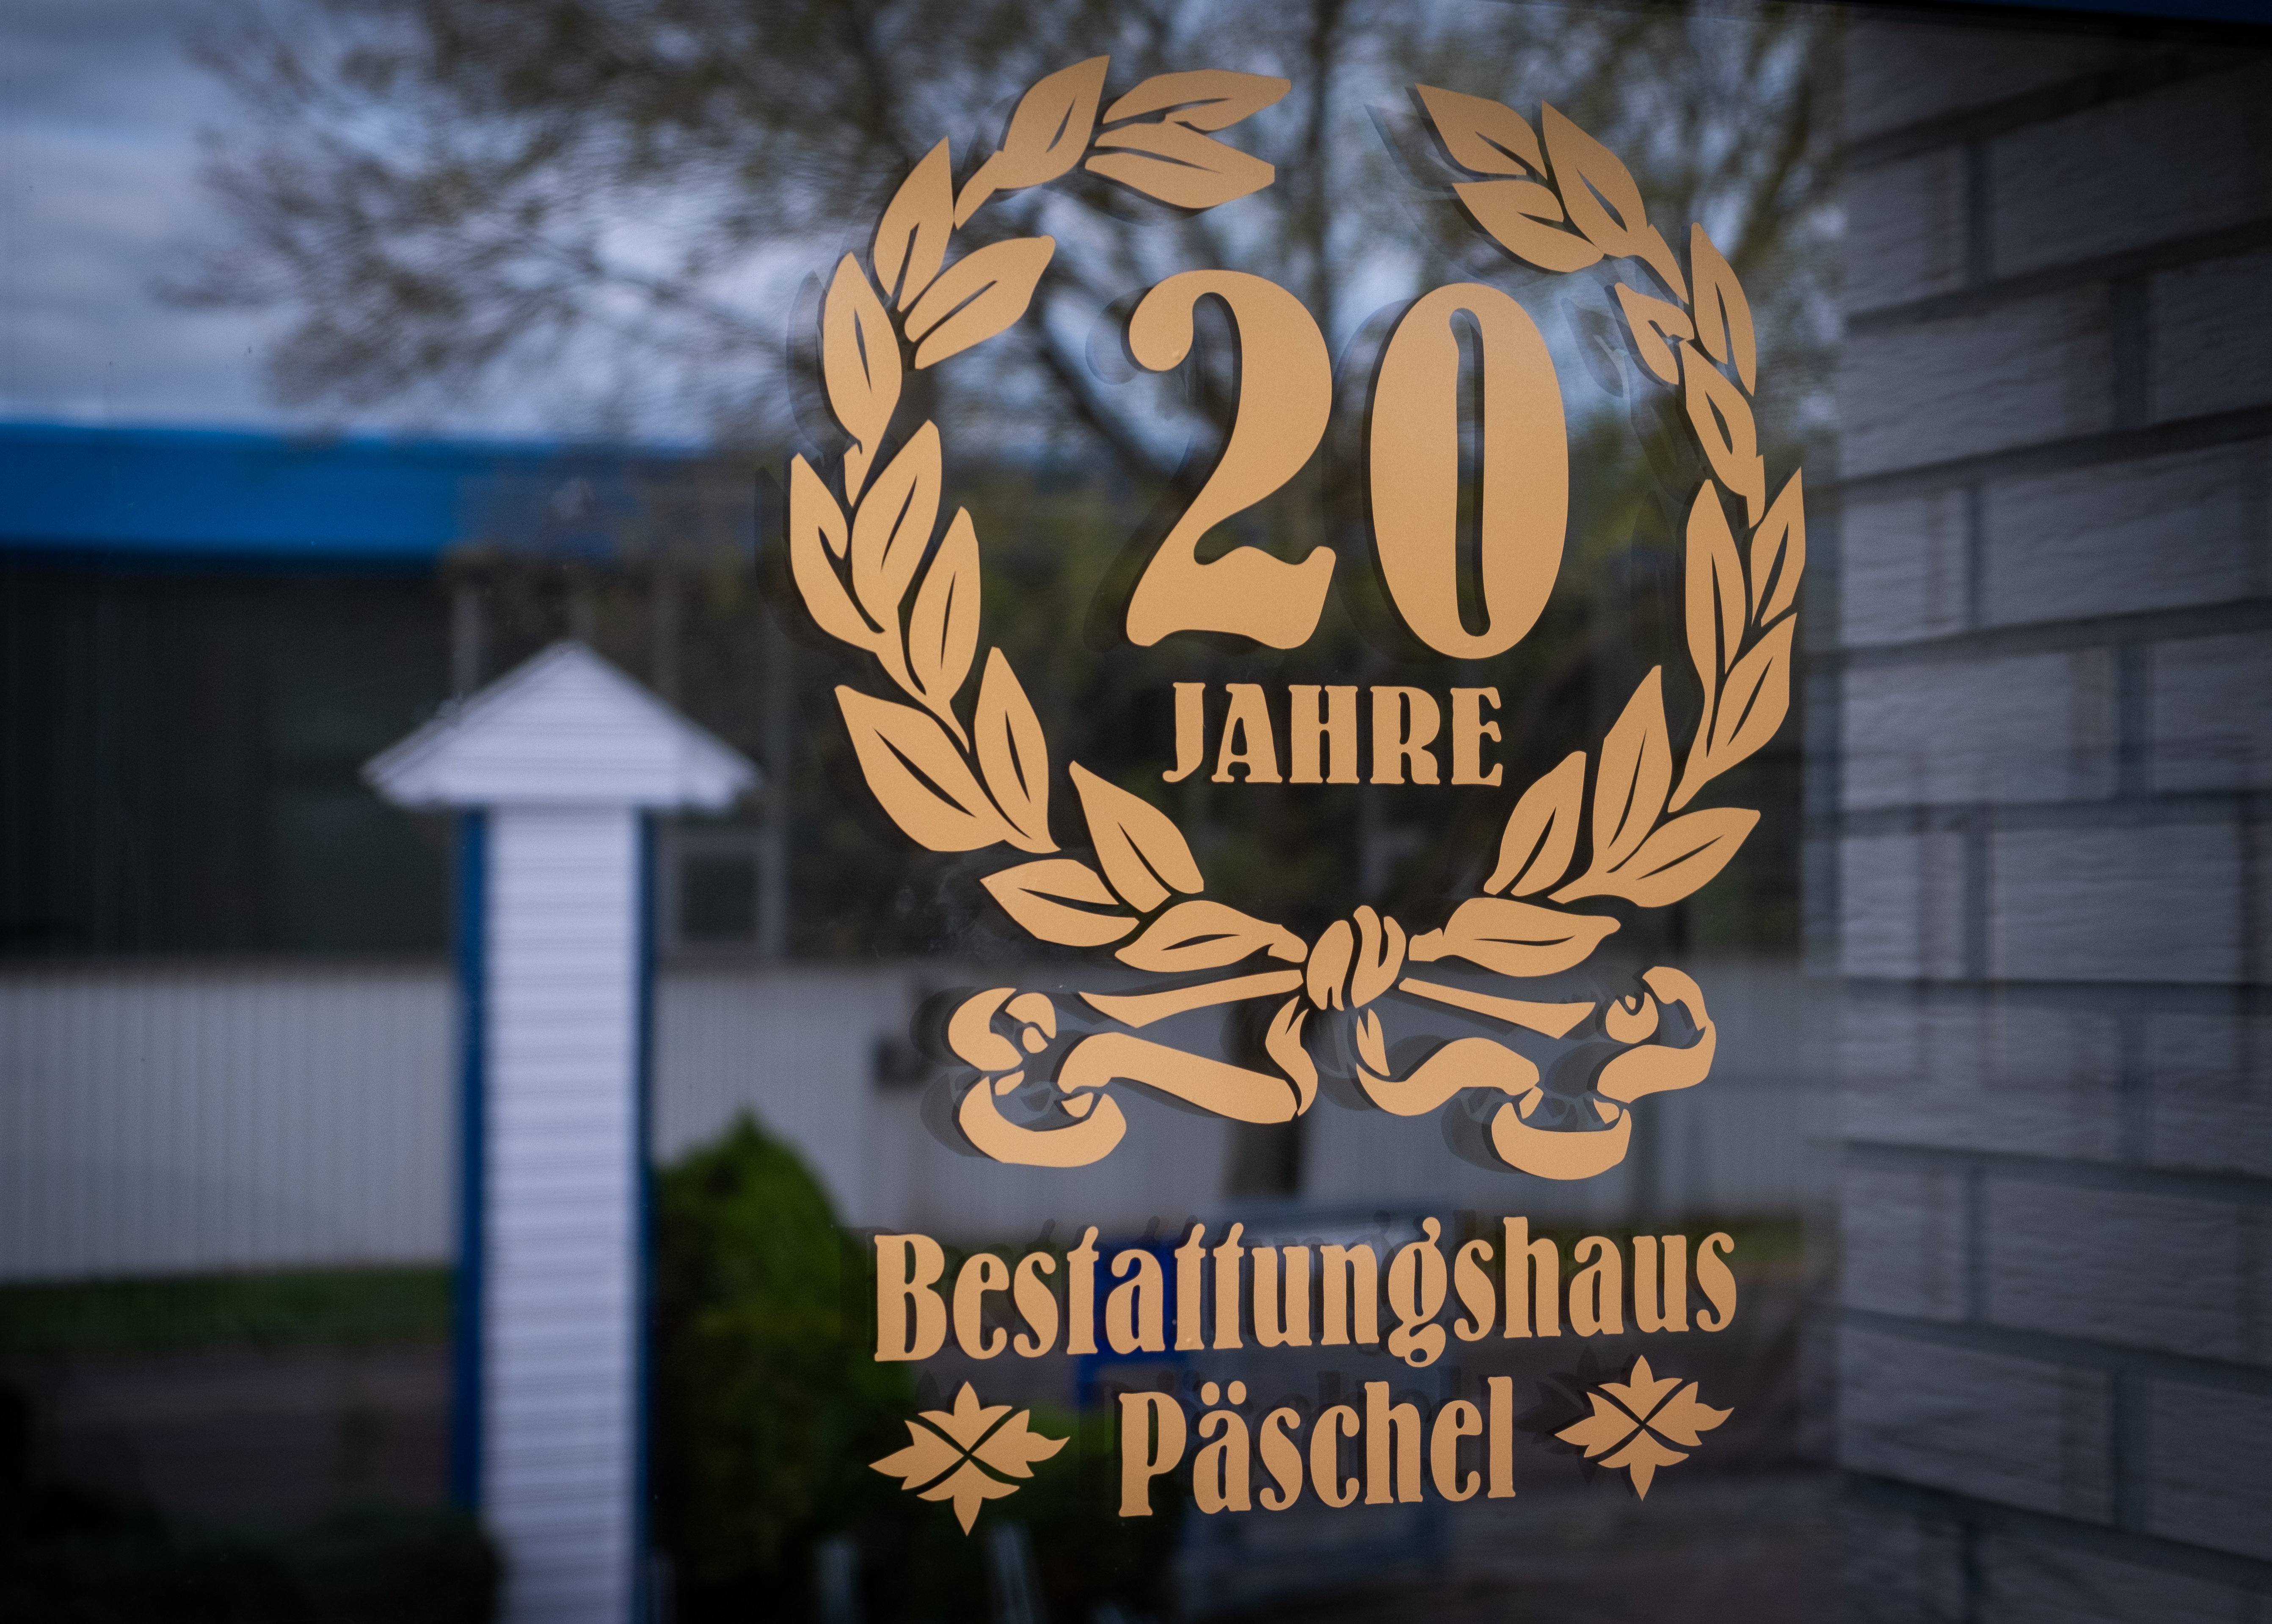 Bild 2 Bestattungshaus Päschel in Leipzig